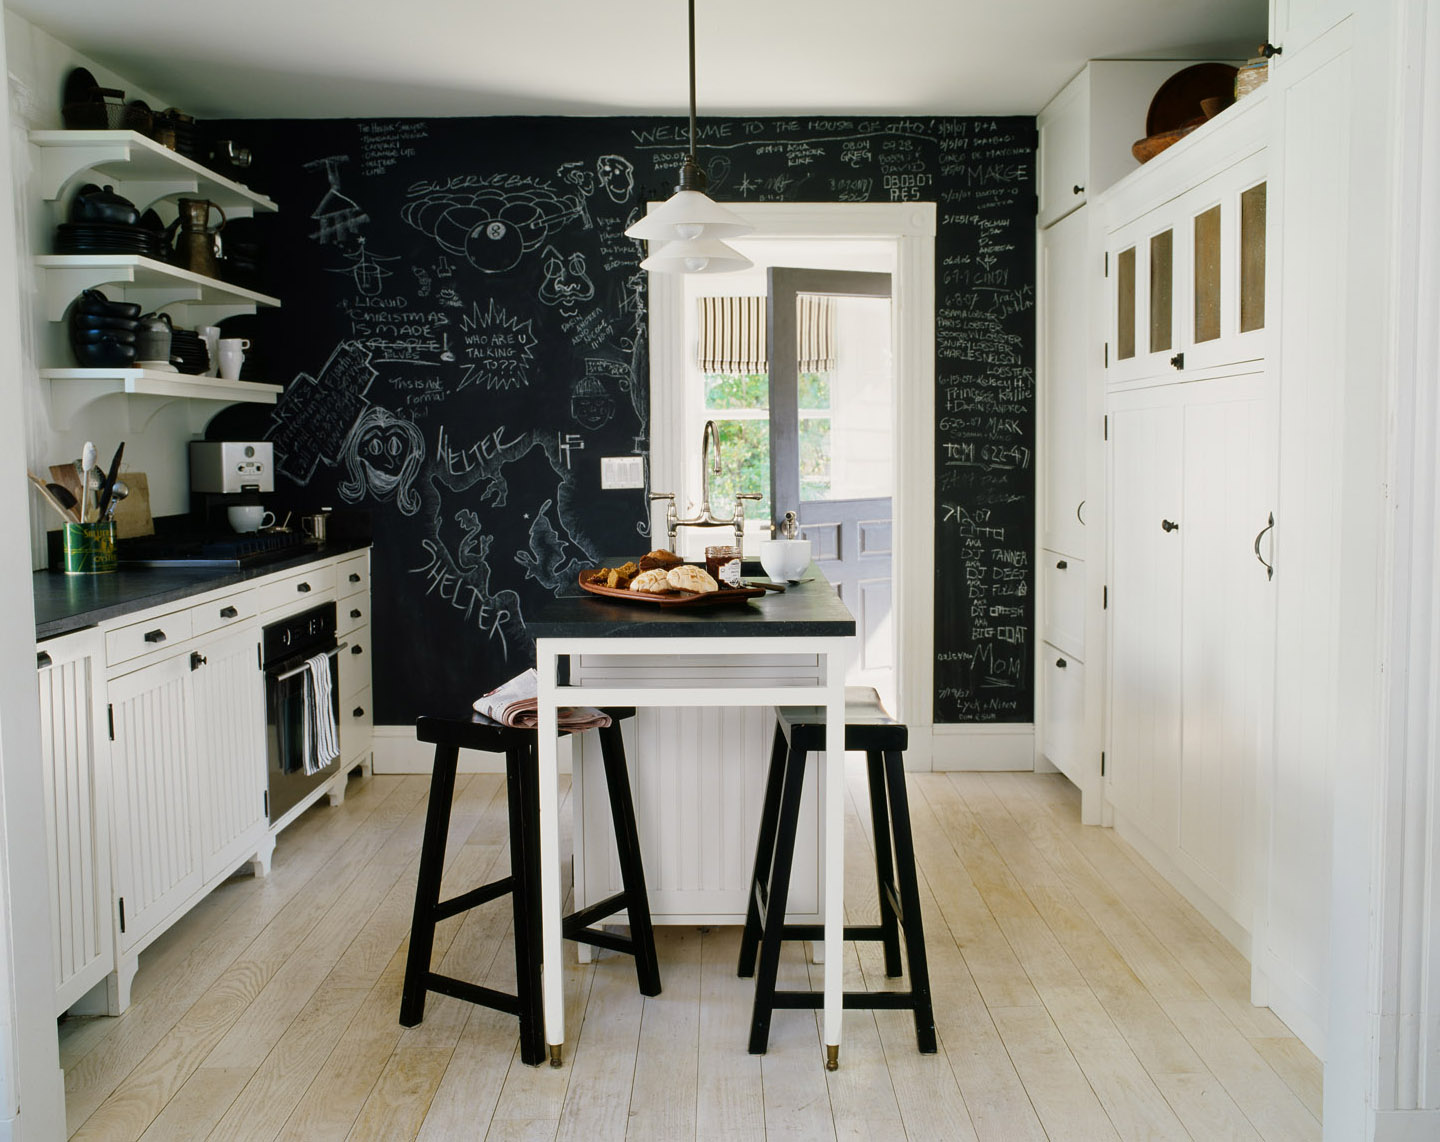 Phòng bếp với gam màu trắng chủ đạo bỗng trở nên nổi bật hơn nhờ bức tường sơn bảng đen ấn tượng. Chủ nhân của nó có thể ghi chú, vẽ thật nhiều hình ảnh để khu vực nấu nướng trở nên vui nhộn và có chiều sâu hơn hẳn.